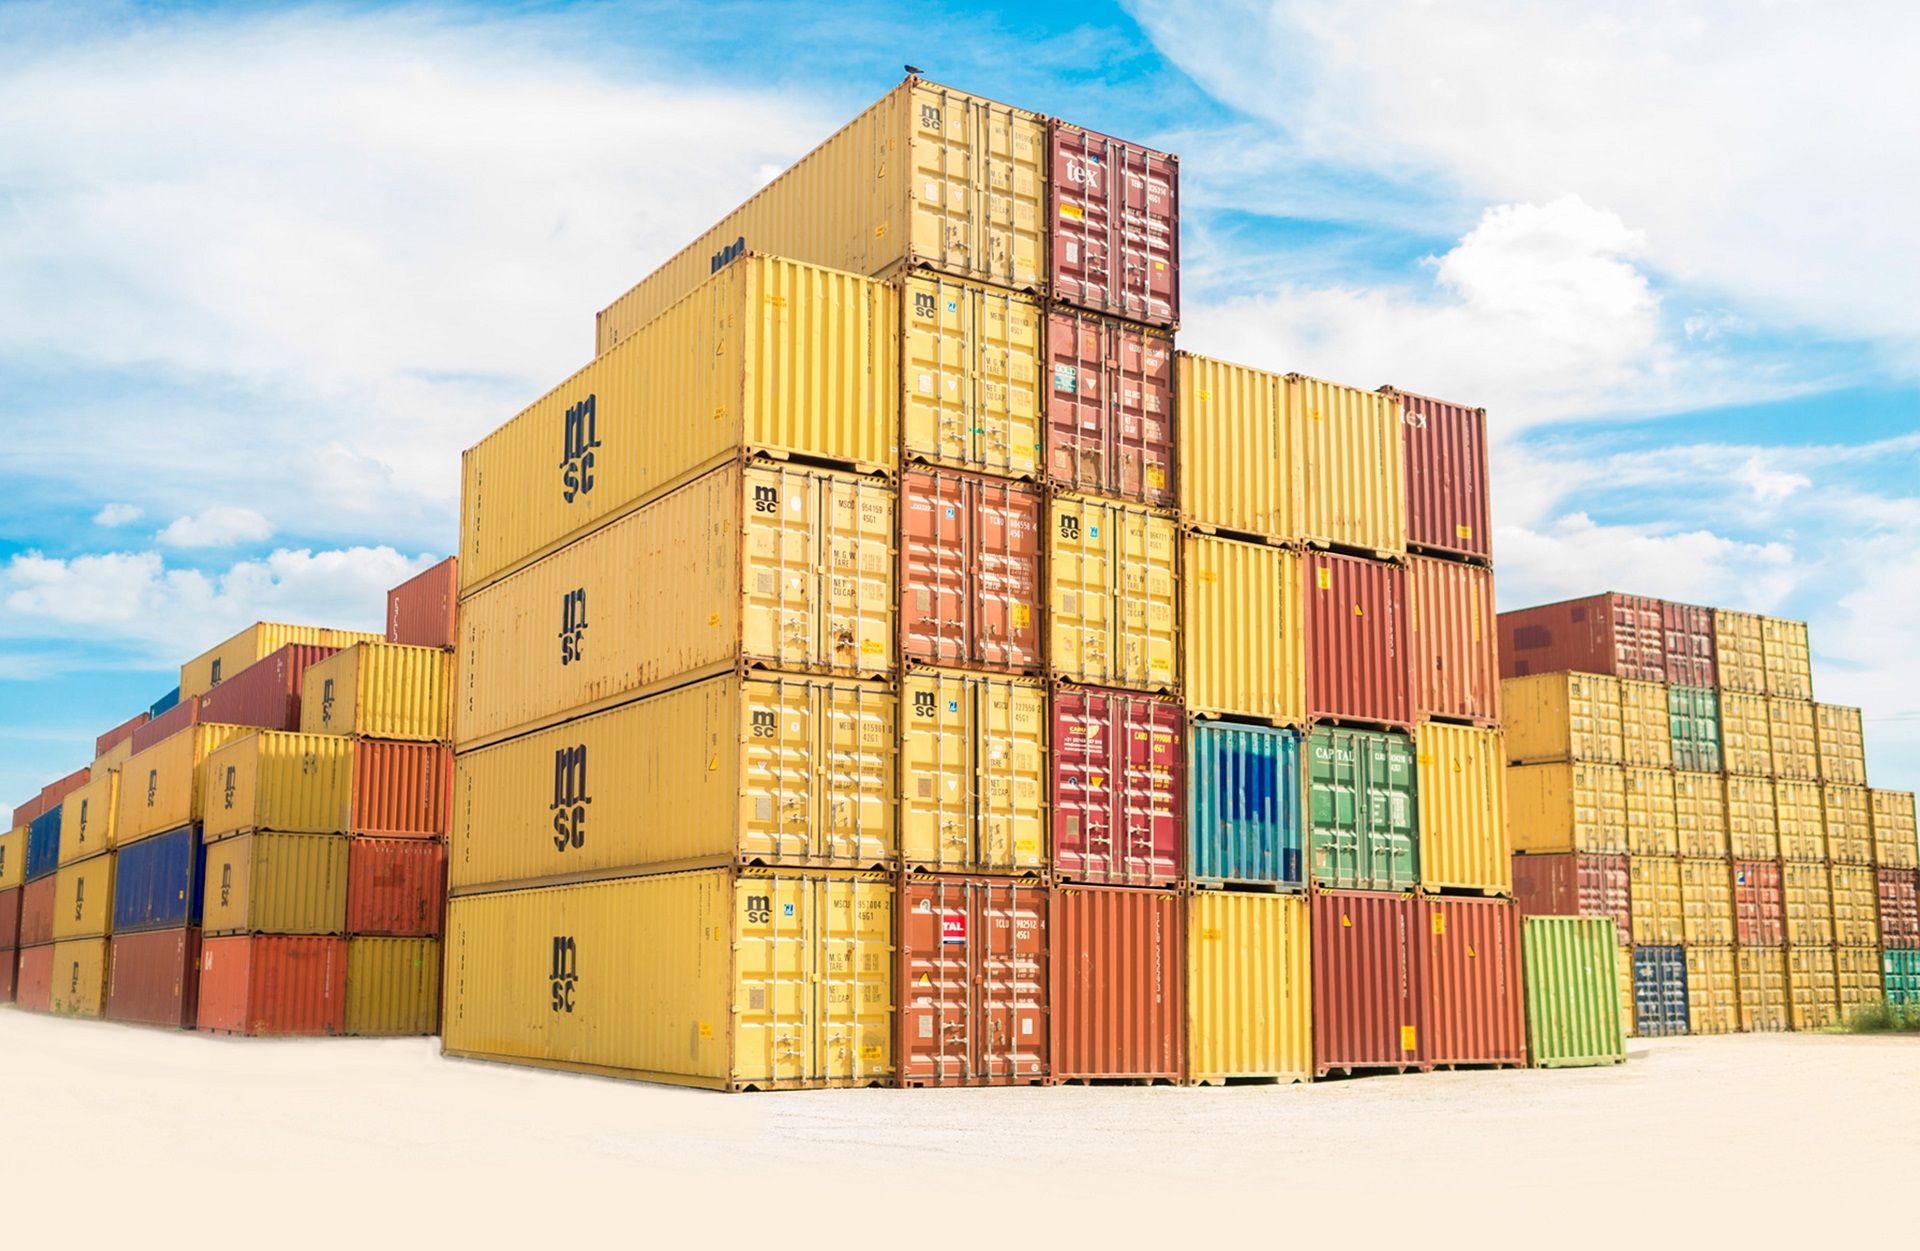 Docker et les conteneurs (containers)